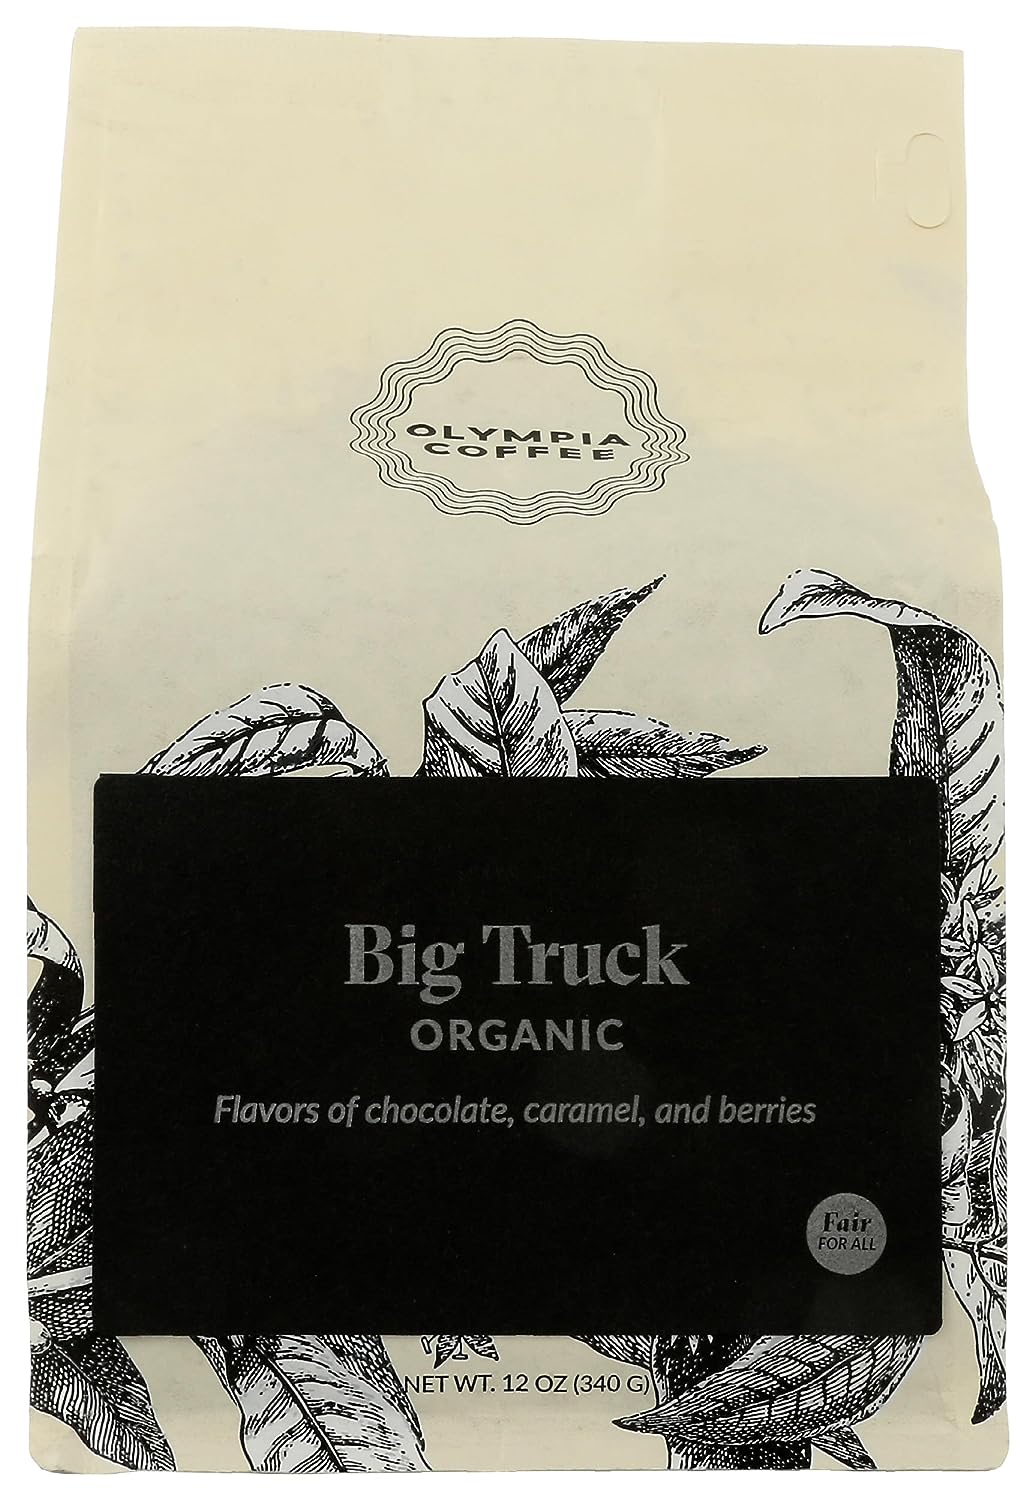 OLYMPIA COFFEE Organic Big Truck Whole Bean Coffee